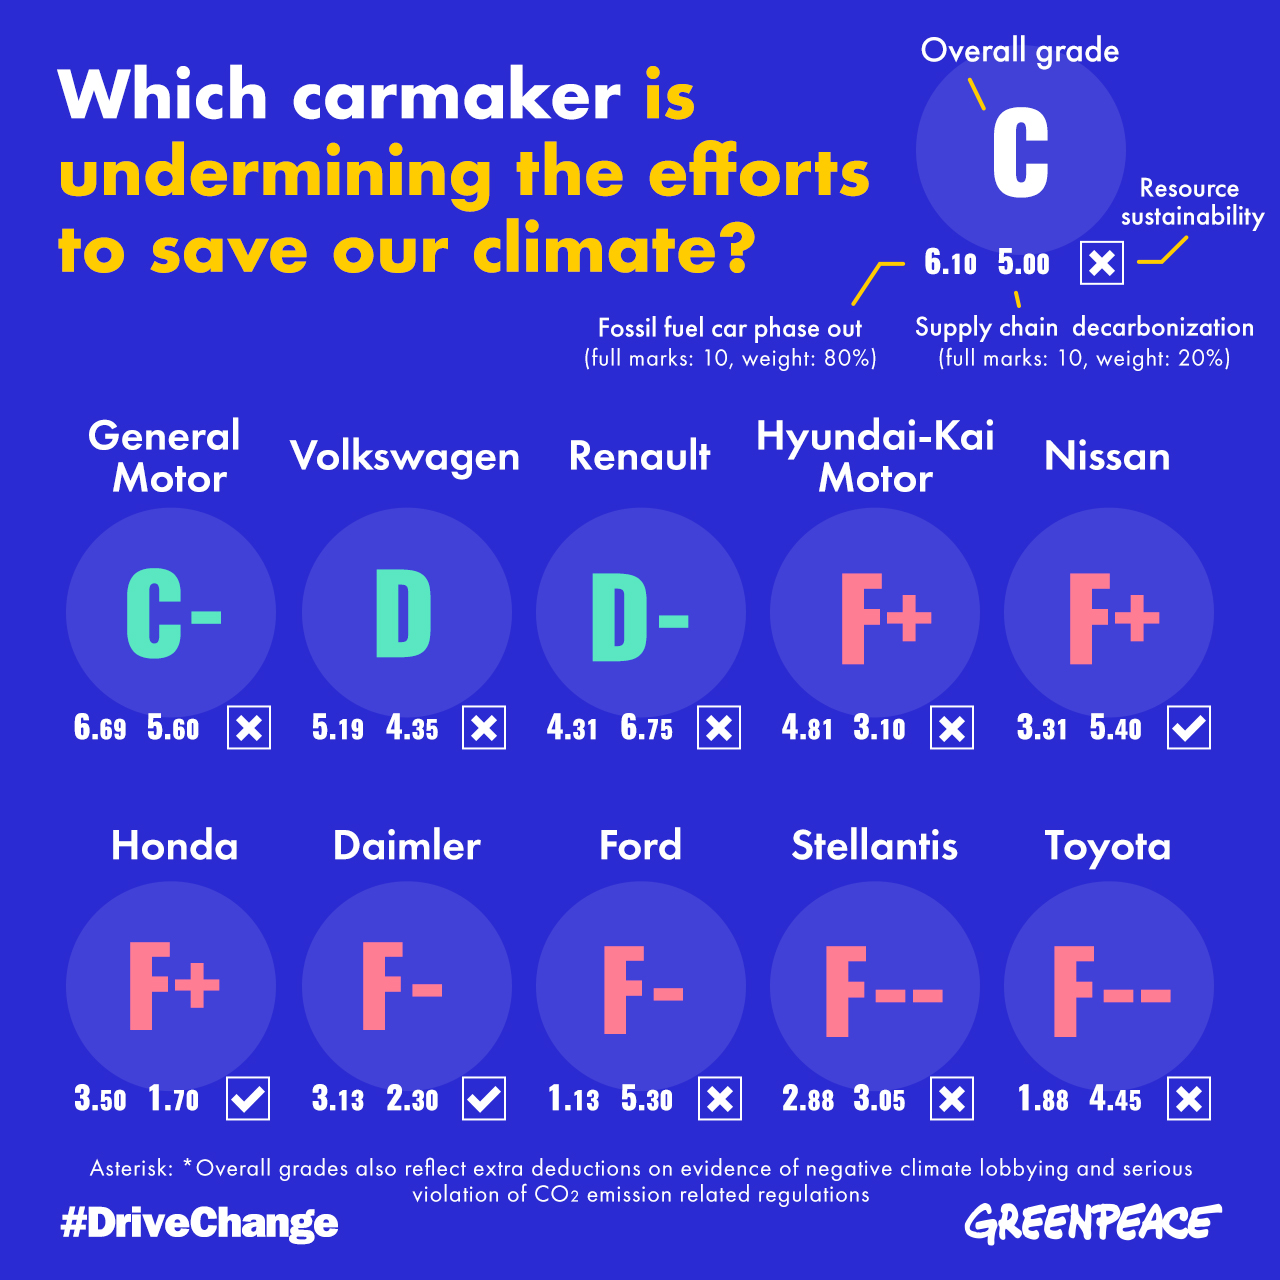 綠色和平針對全球十大車廠的減碳成果與氣候行動進行評比，指出產業當前表現令人失望，銷售量最高的豐田汽車（Toyota）更敬陪末座。